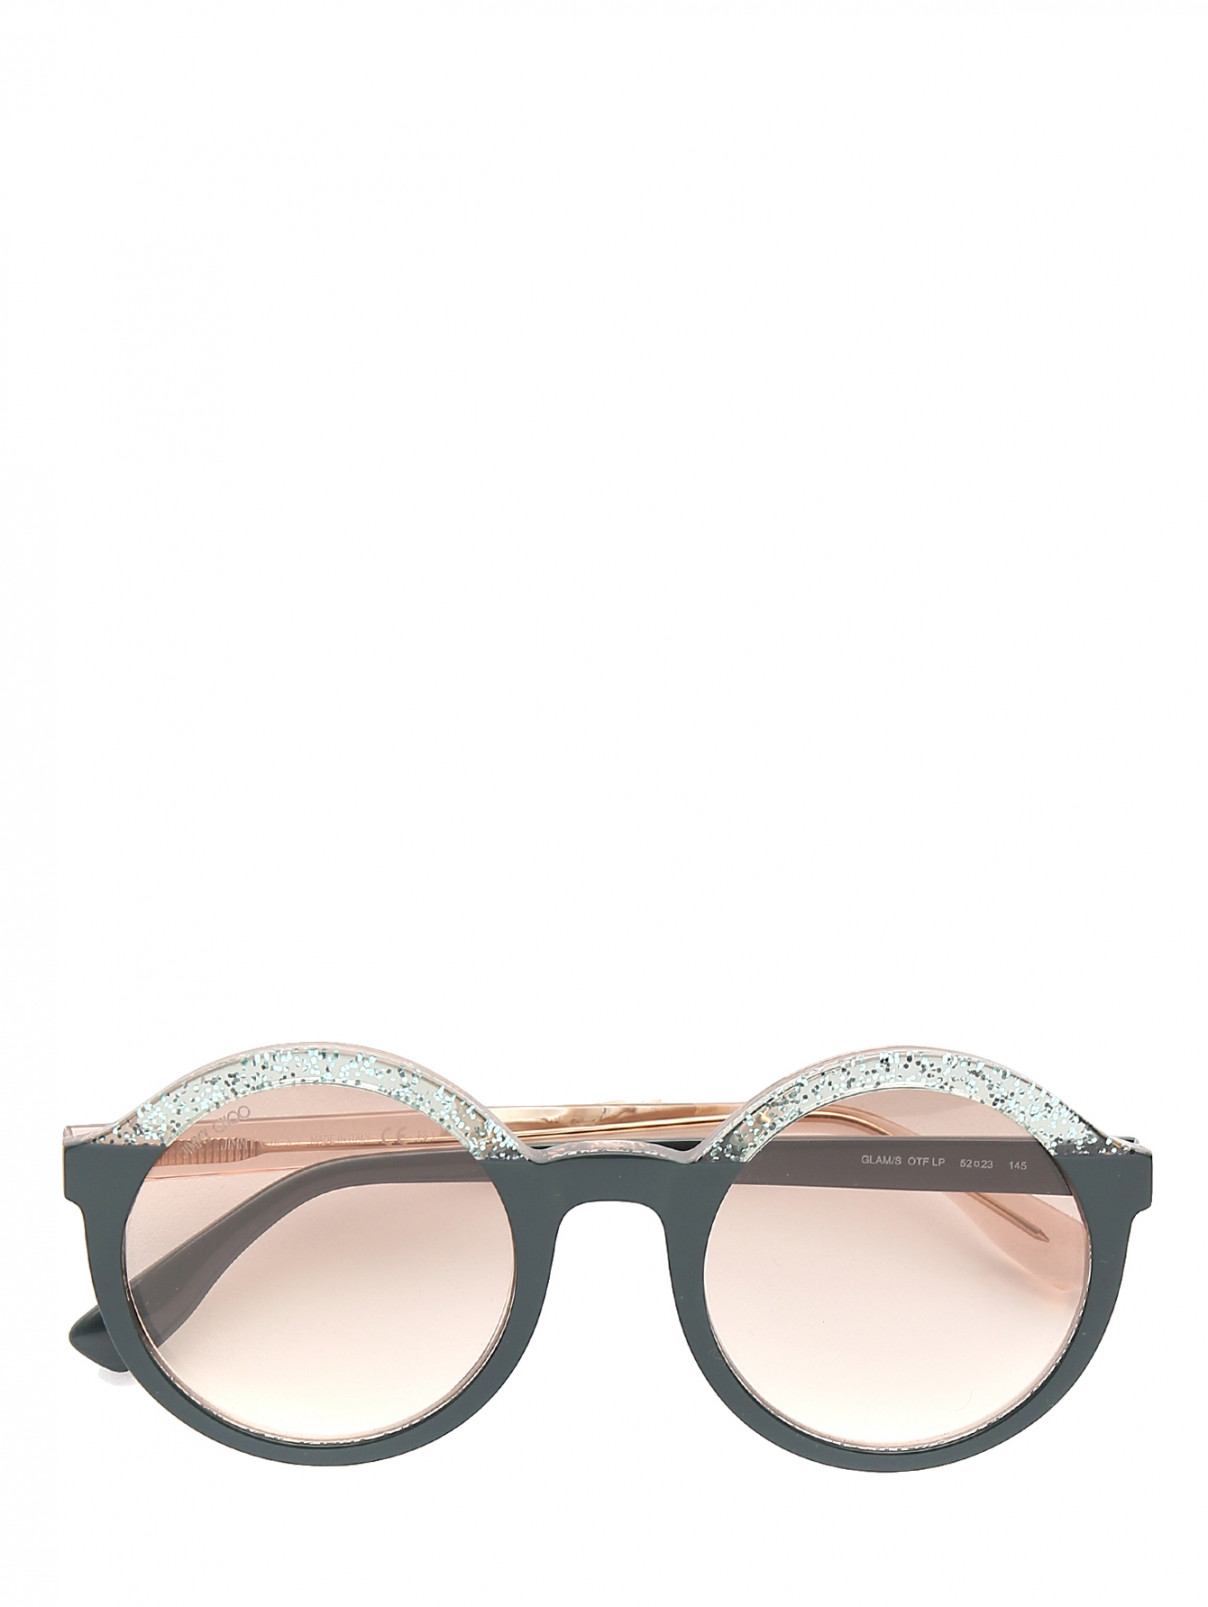 Солнцезащитные очки в оправе из пластика декорированные блестками Jimmy Choo  –  Общий вид  – Цвет:  Зеленый